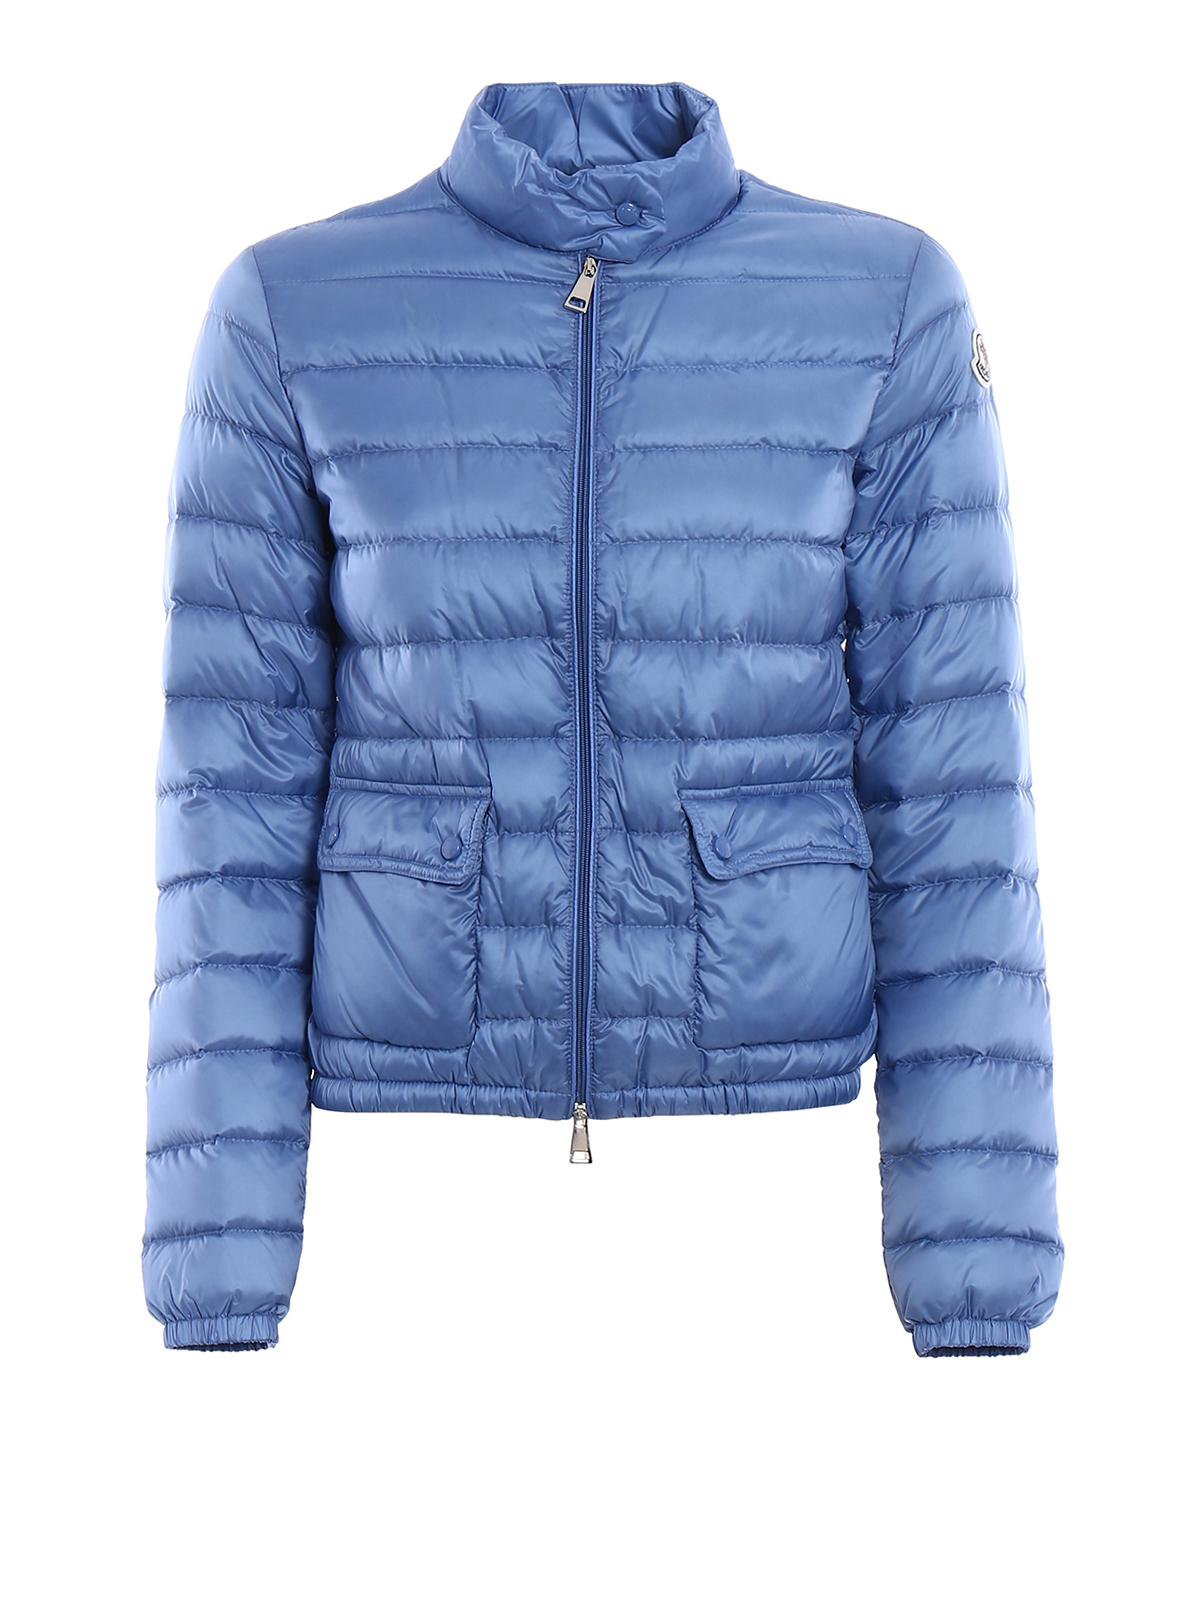 moncler jacket light blue